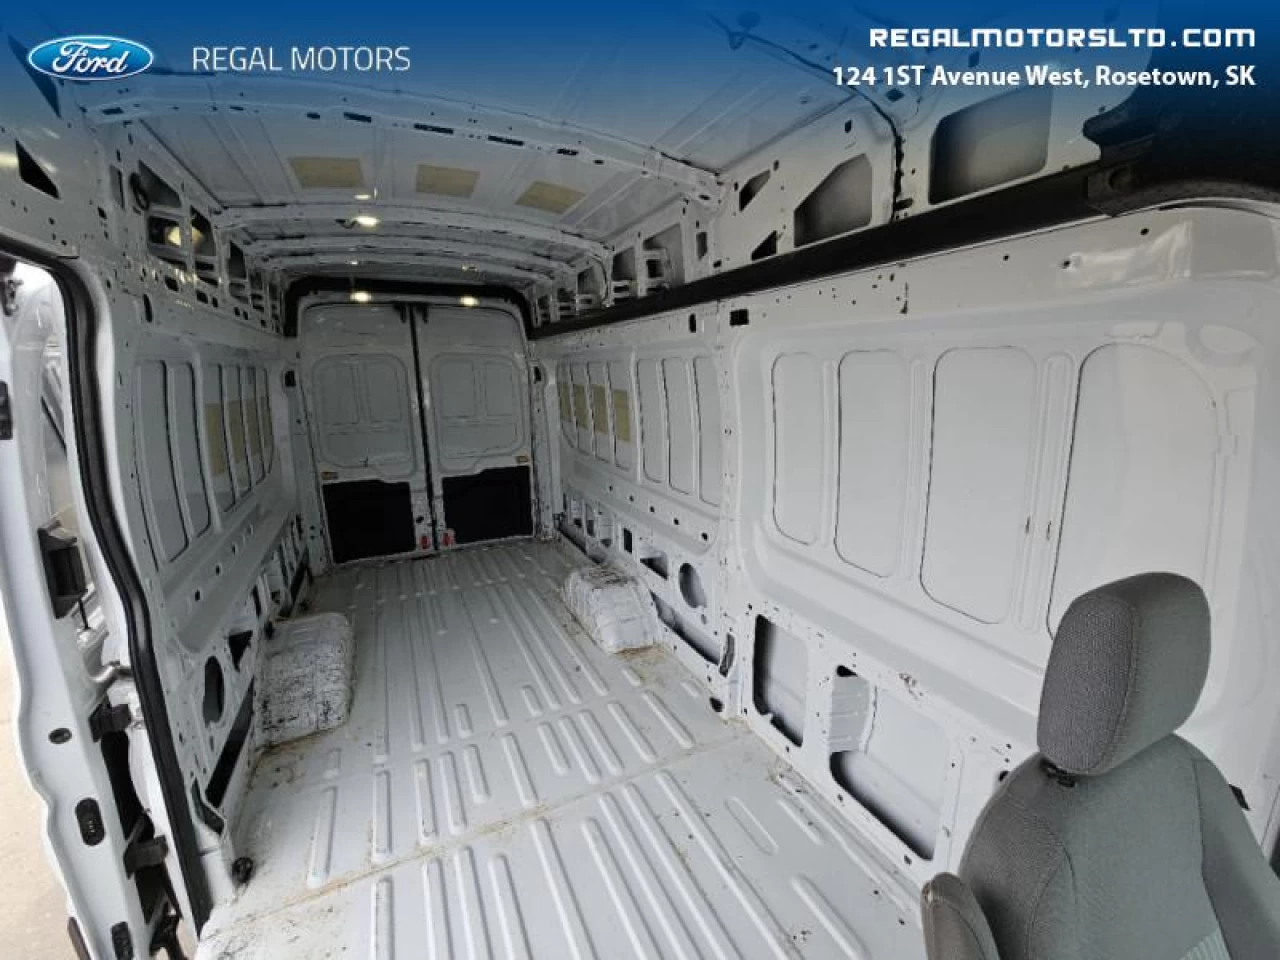 2016 Ford Transit Cargo Van TRANSIT 350 HD DRW VAN Main Image